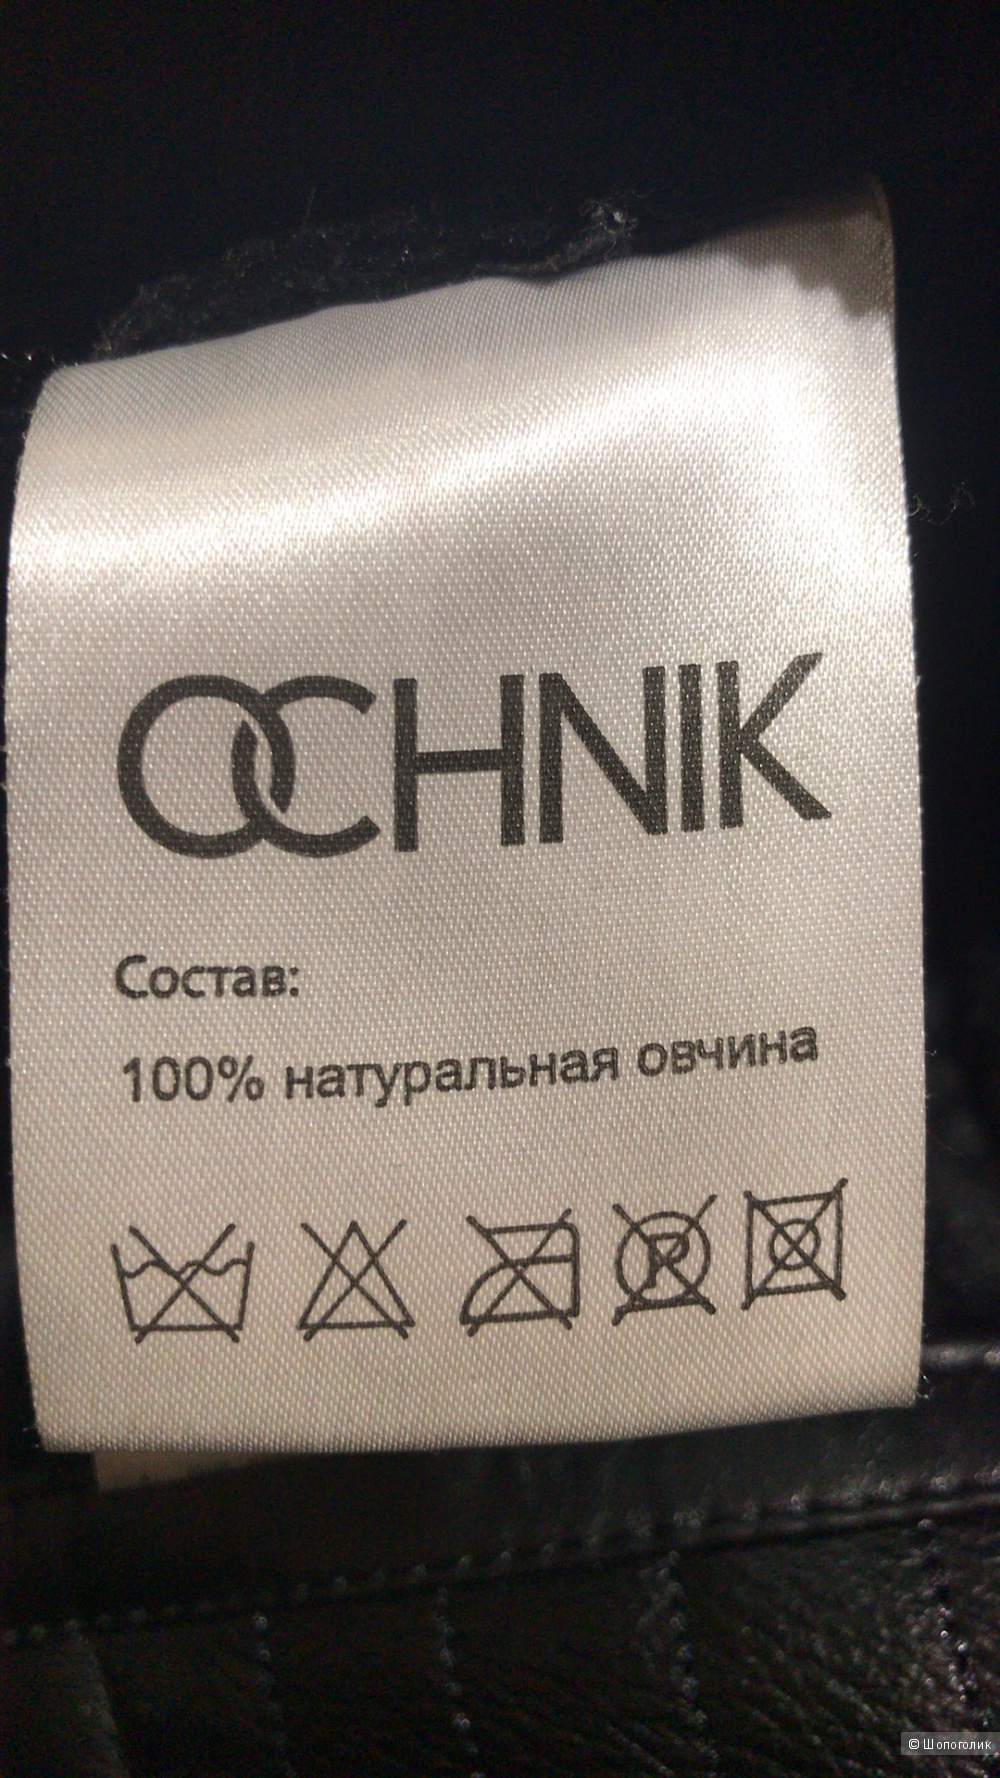 Дублёнка фирма Ochnik размер XL